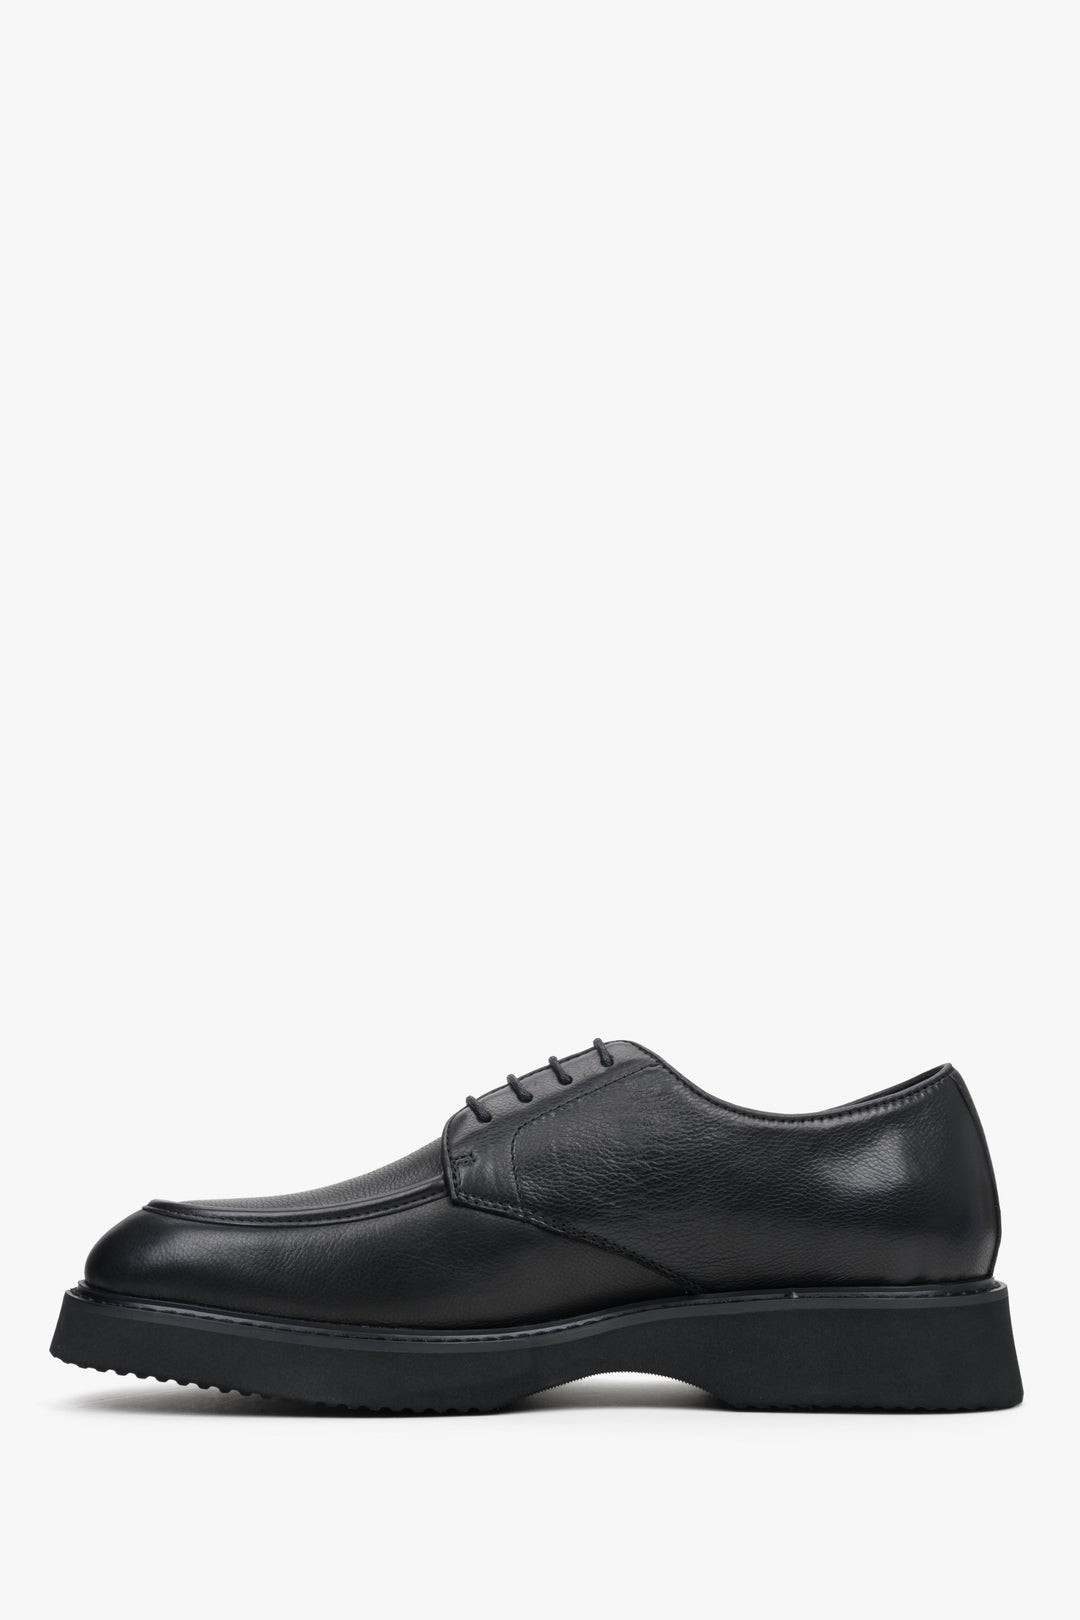 Men's black leather Estro shoes - shoe profile.